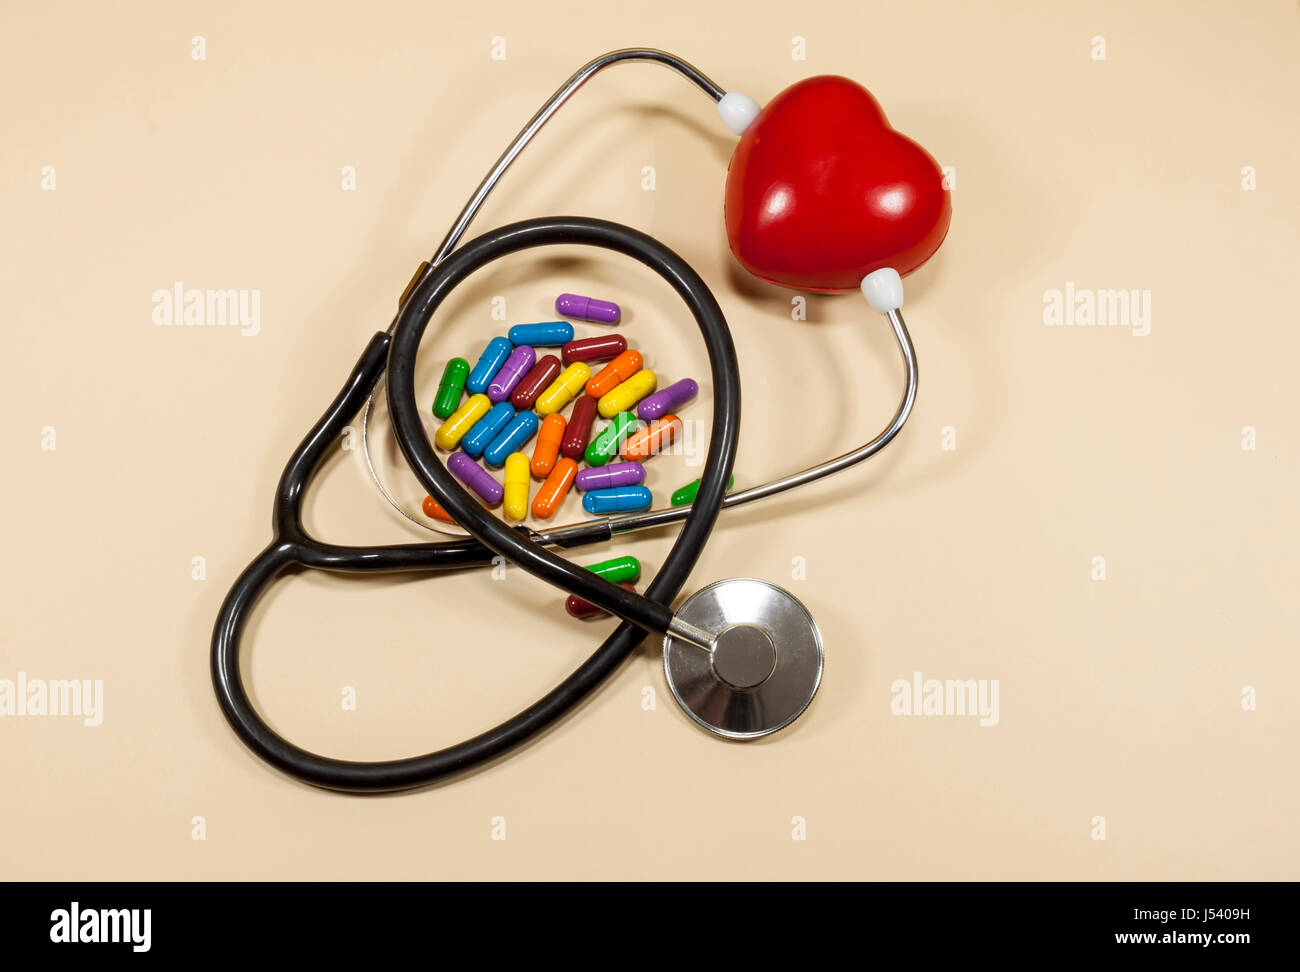 Rotes Herz schwammiges gesperrt zwischen den Armen eine medizinische Stethoskop und farbigen Pillen, Konzept über Herz-Kreislauf-Gesundheit und lifestyle Stockfoto